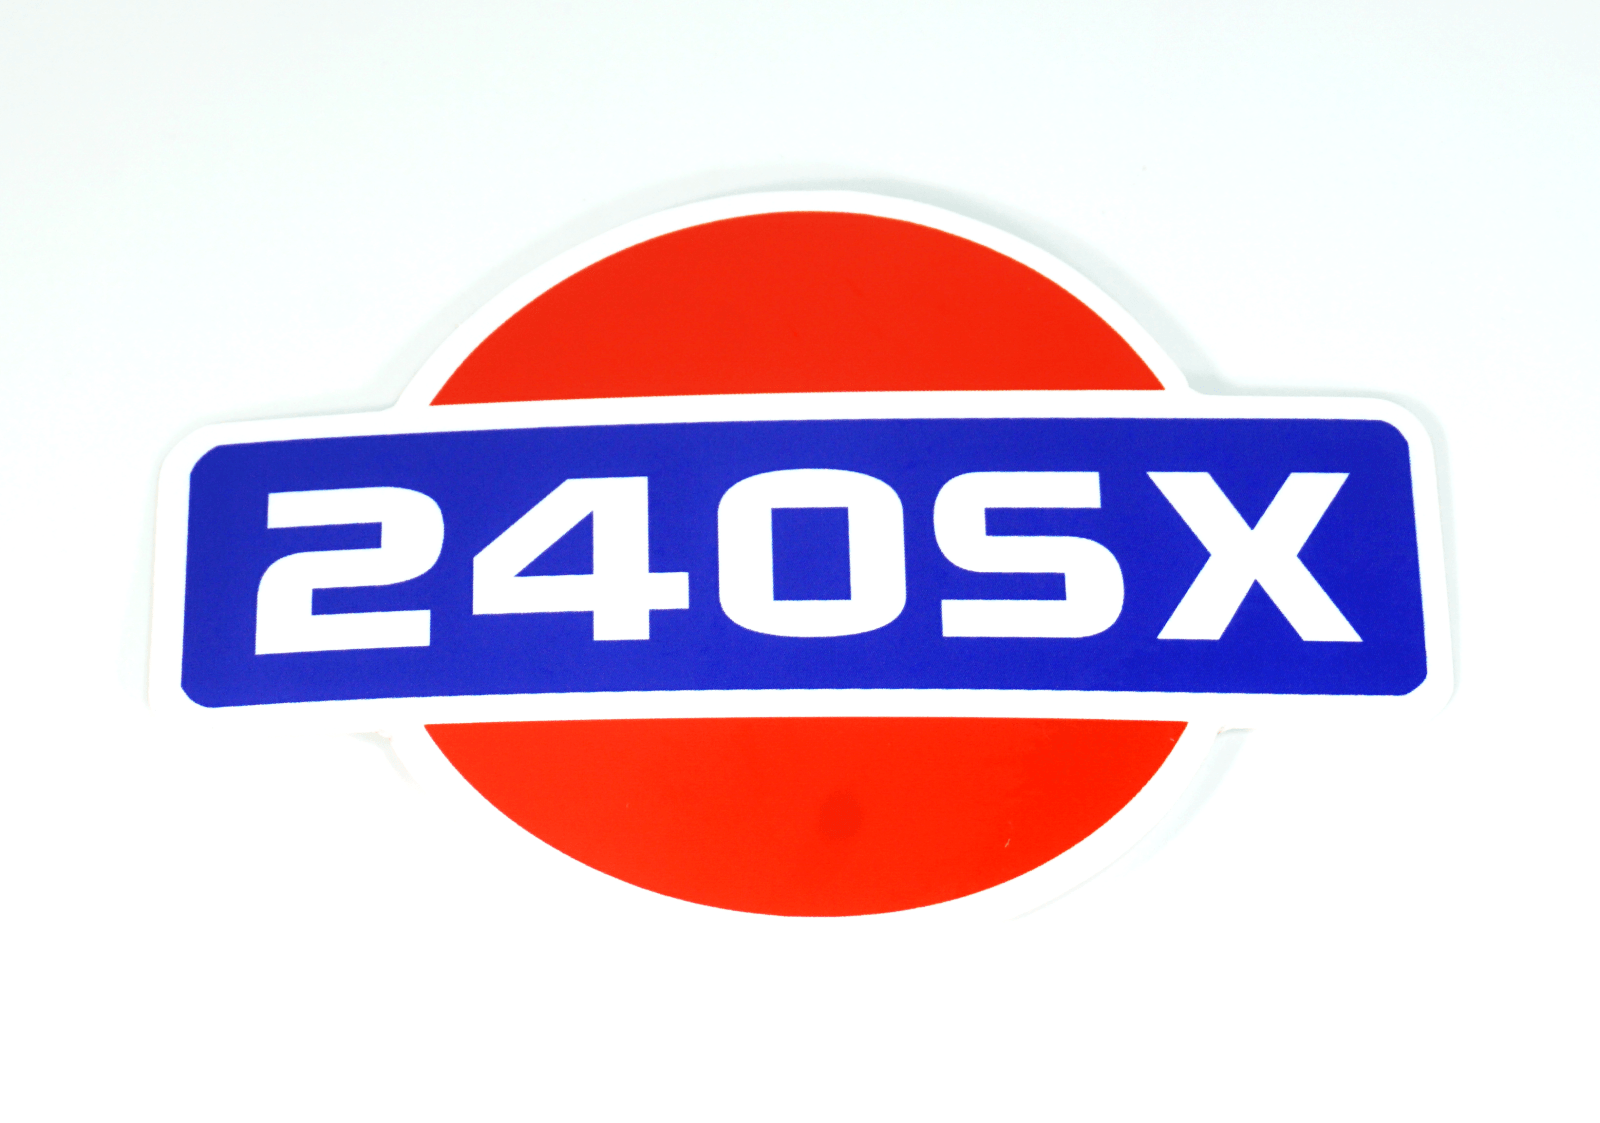 White Vinyl 240SX Nissan '90s-style Sticker Decal, 4" x 2.8" Nissan NISMO 350z 370z 300zx 240sx frontier titan sentra versa